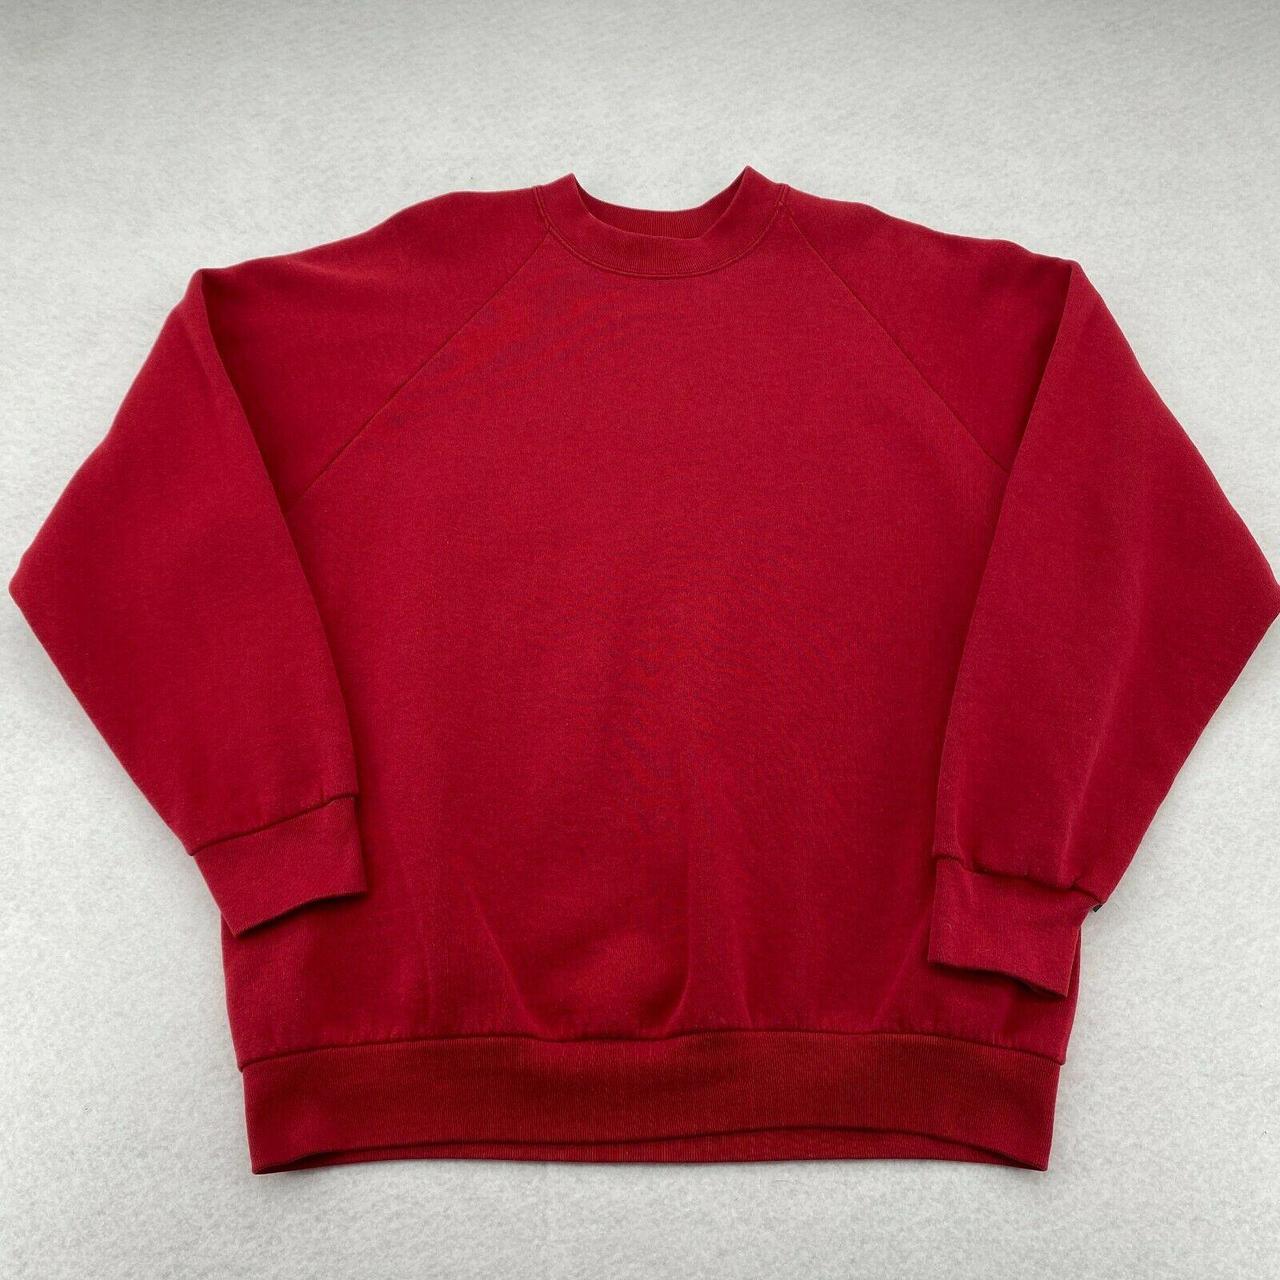 Vintage 90's Fruit of the Loom Crewneck Sweatshirt... - Depop